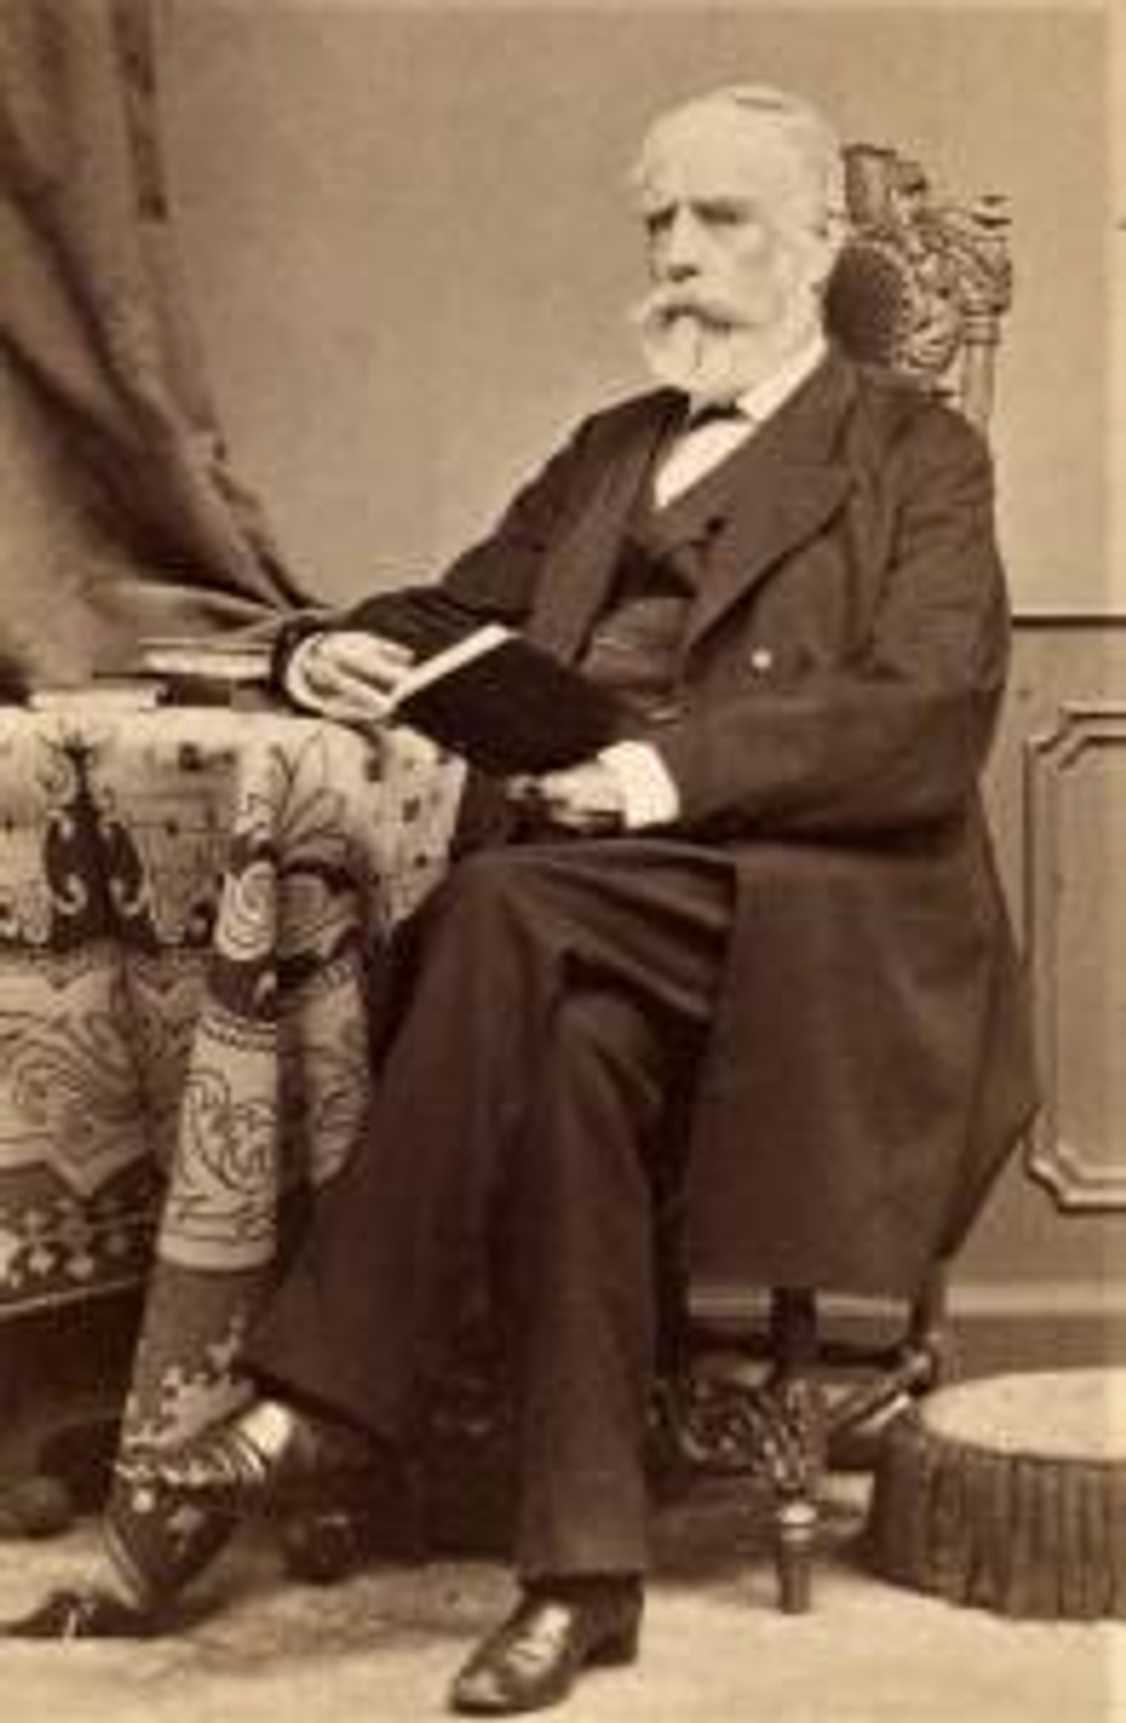 Hugo Salm-Reifferscheidt-Raitz (1803–1888)
